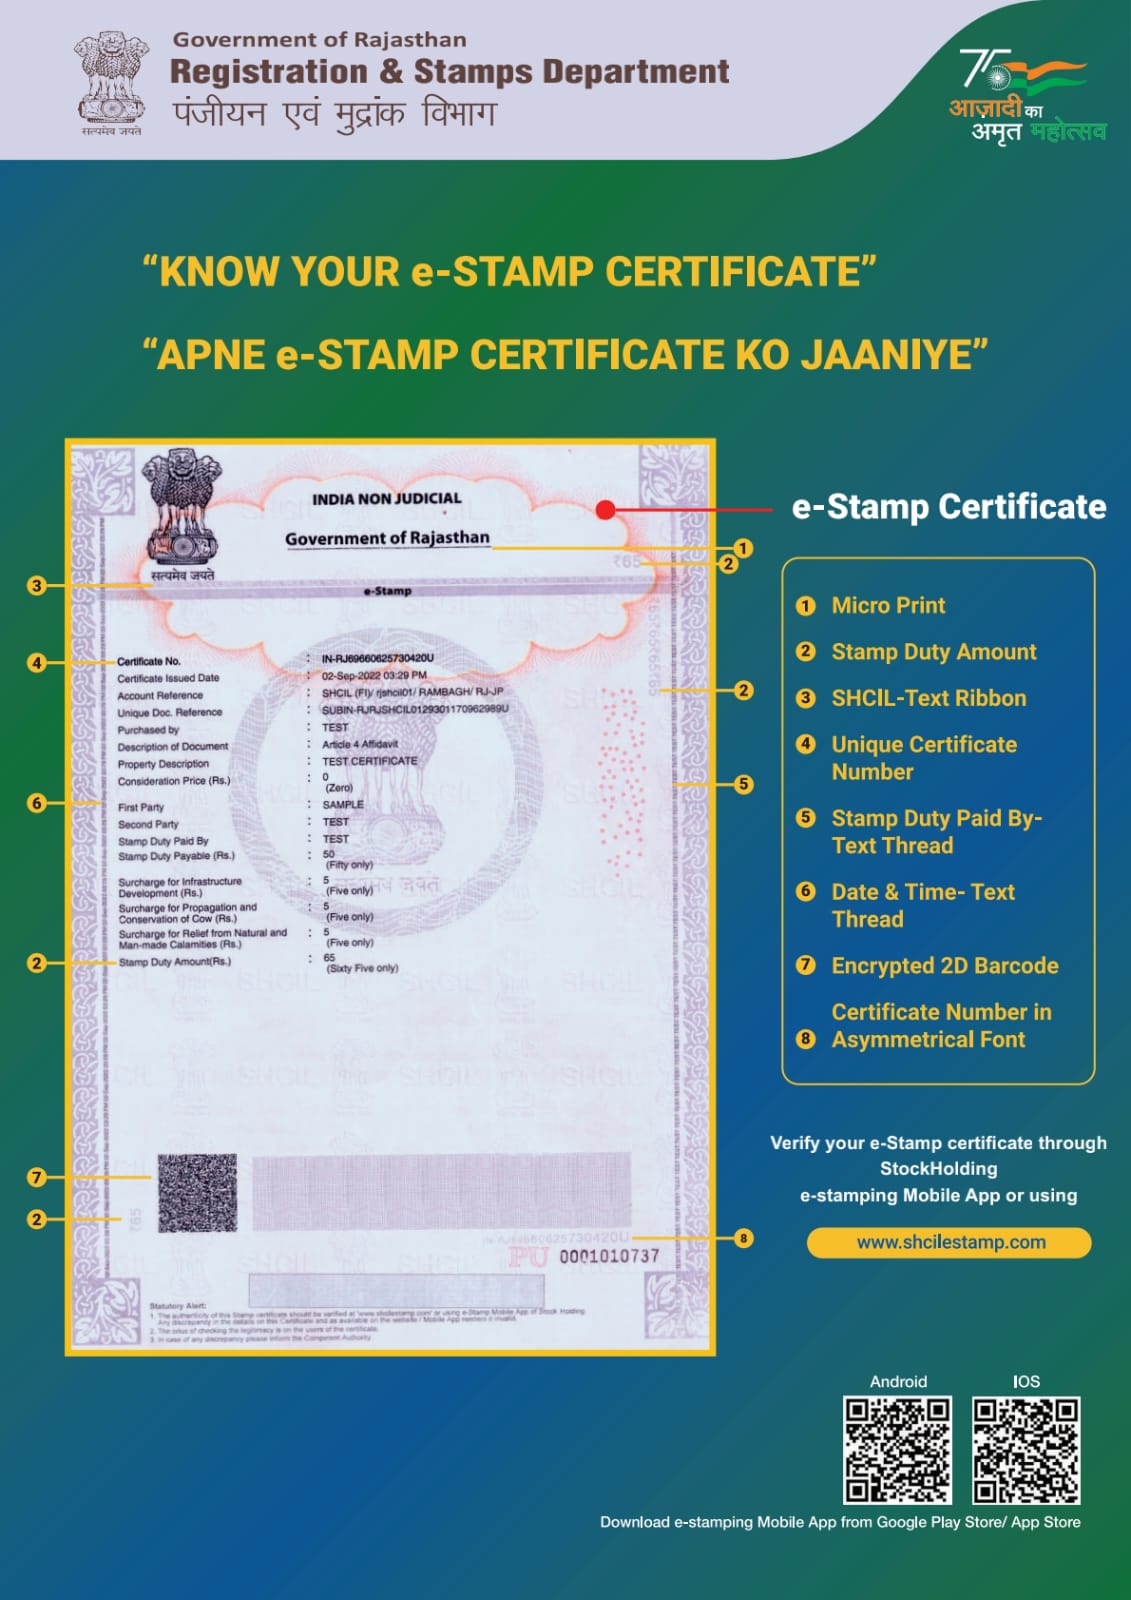 epanjiyan-rajasthan-registration-stamps-igrs